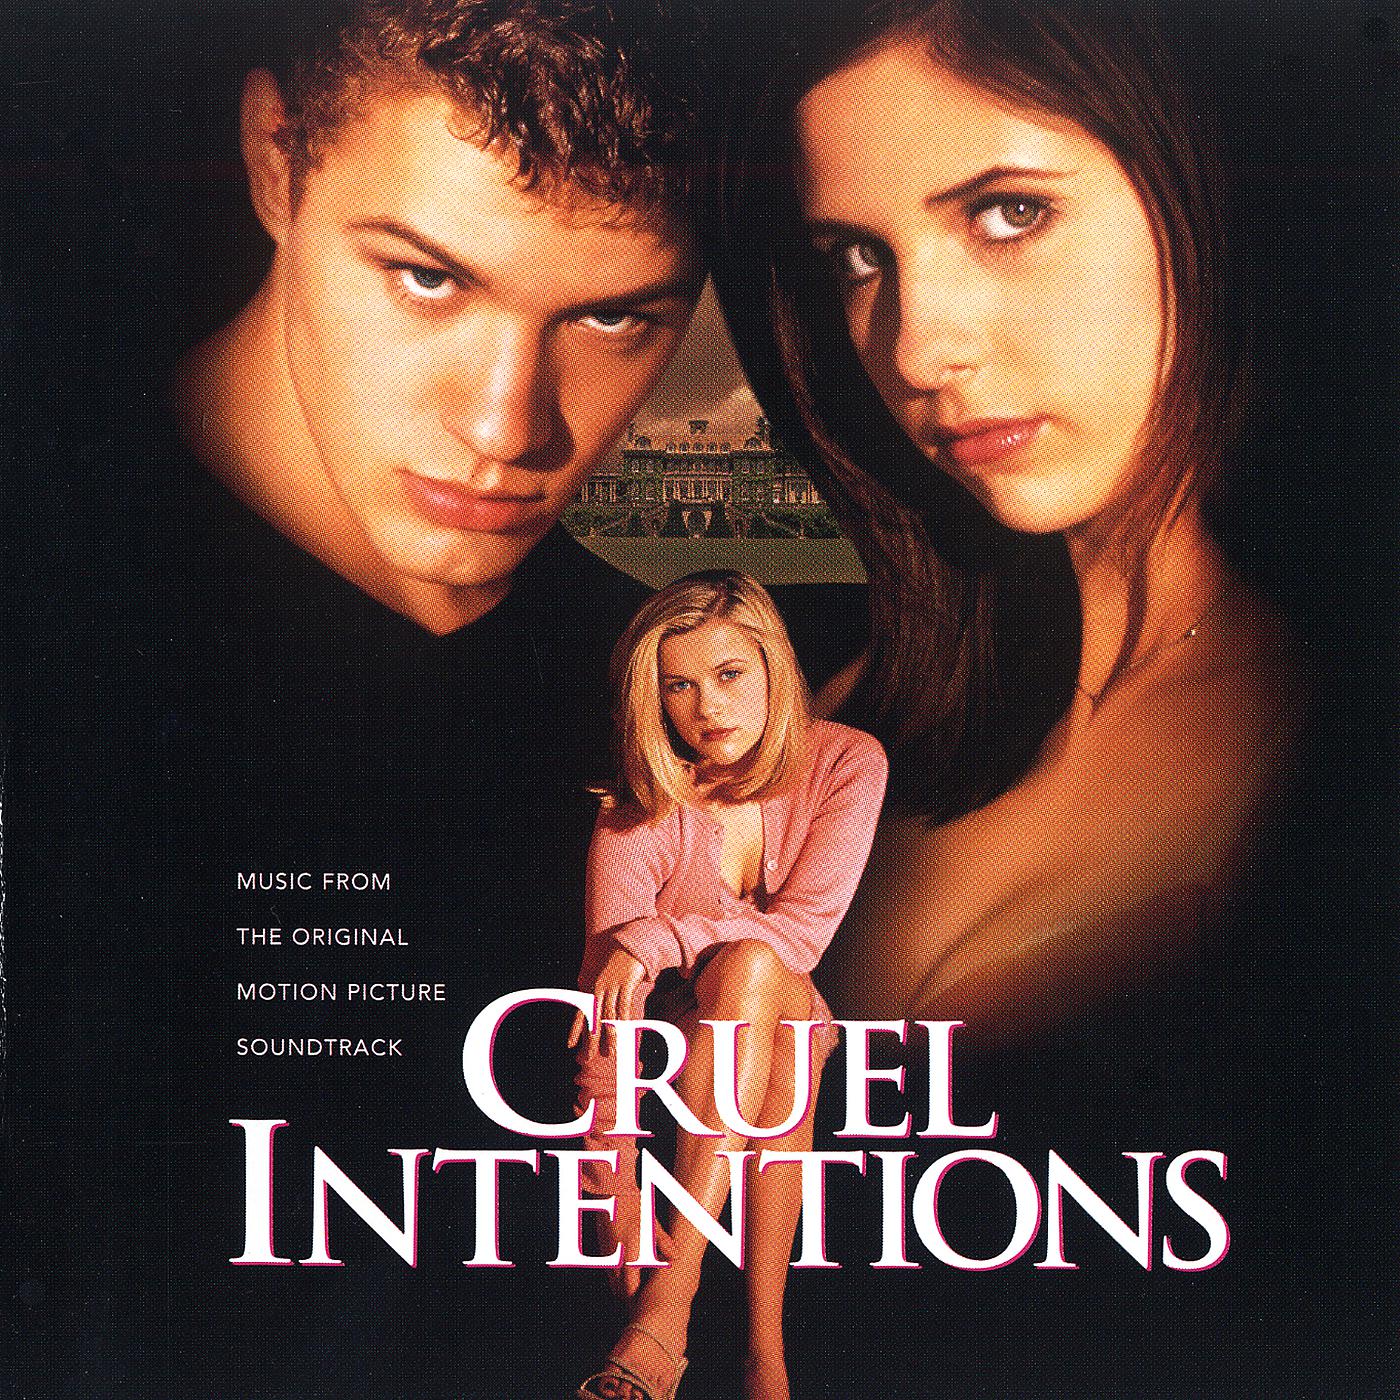 Слушать аудиокниги жестокие игры. Жестокие игры (cruel intentions) 1999. Жестокие игры обложка.